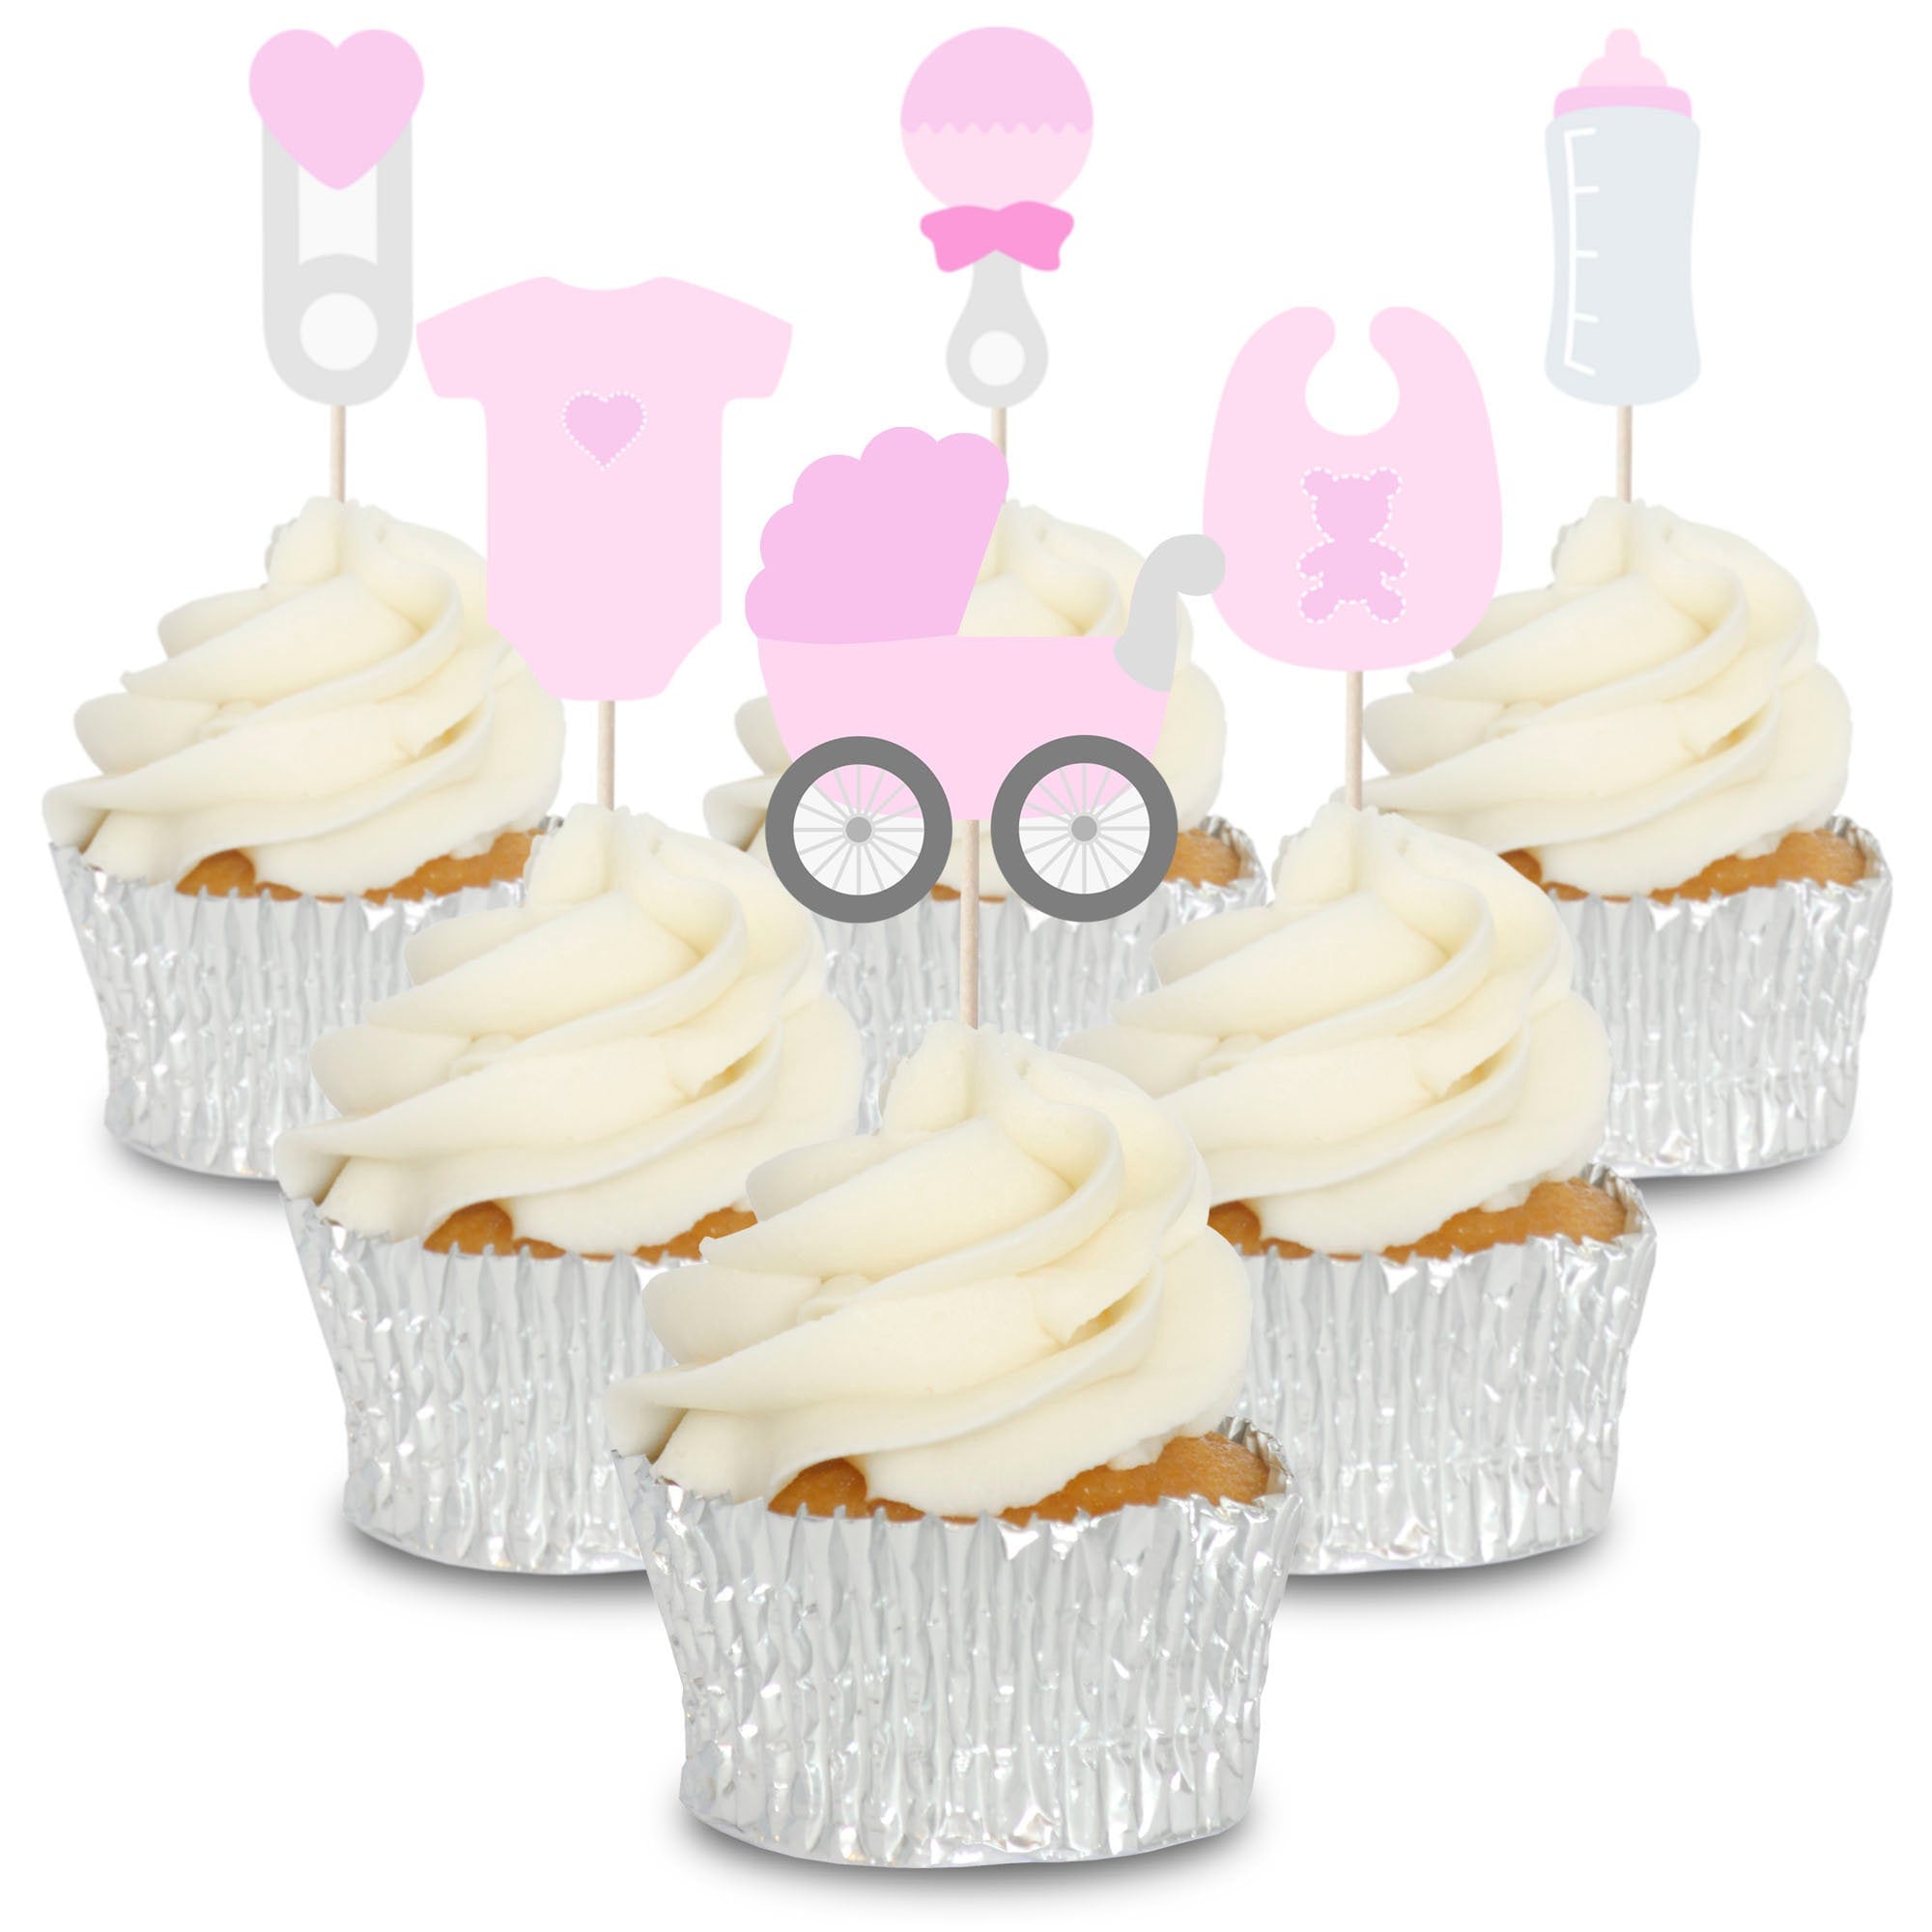 Bilder bild cupcake bilder bild muffin bilder bild küche bilder bild cupcake  bilder muffin bild